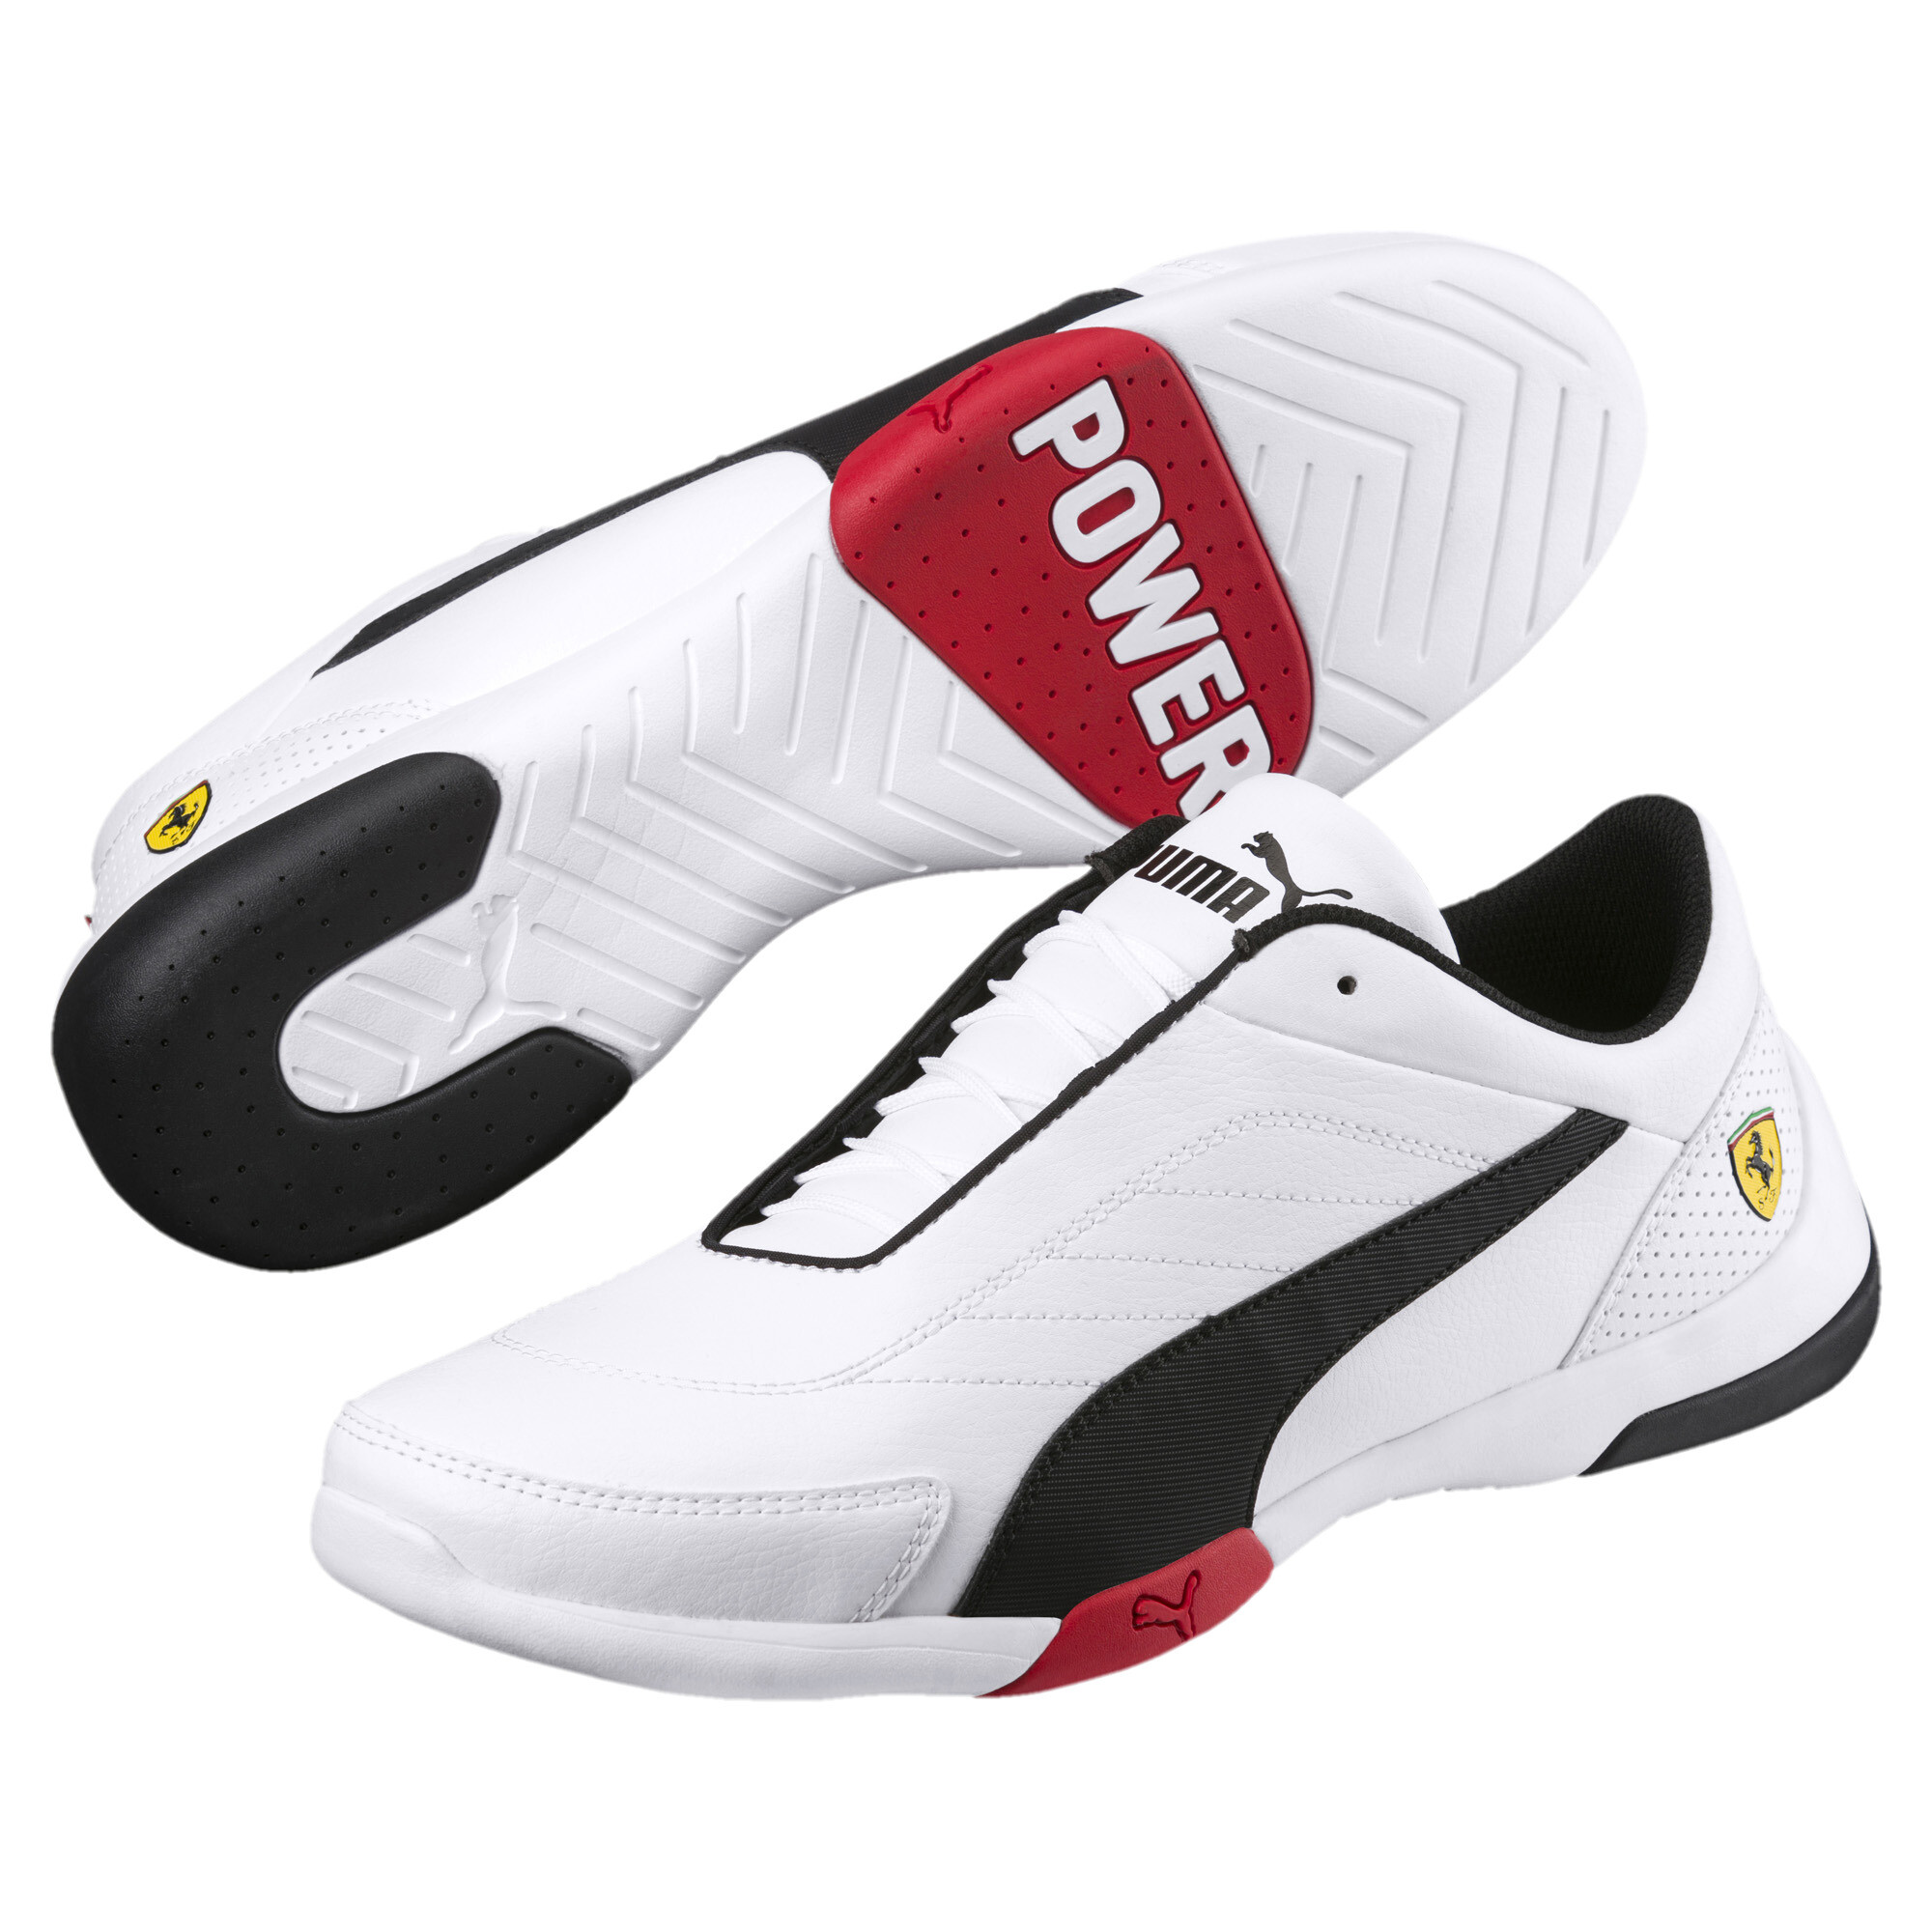 PUMA Scuderia Ferrari Kart Cat III Men's Shoes Men Shoe Auto | eBay